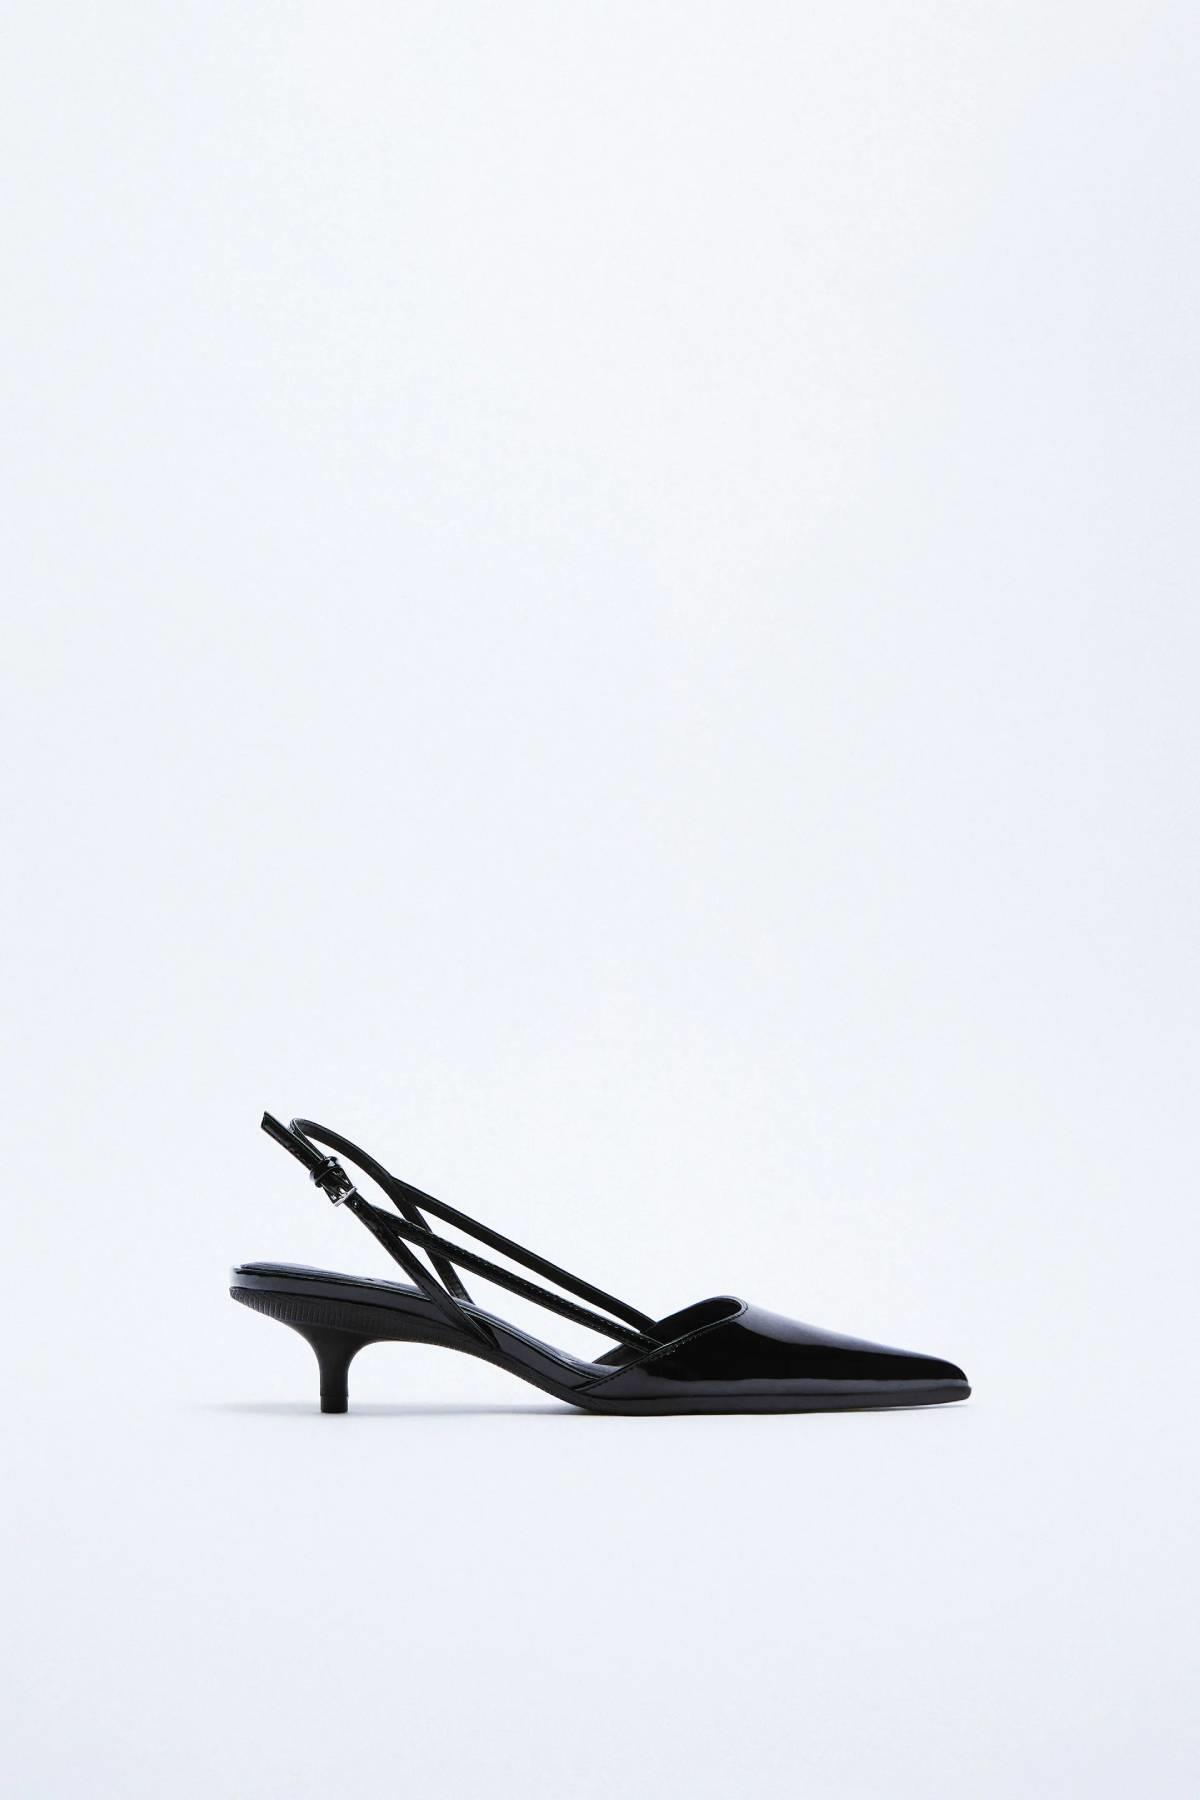 Zapatos destalonados negros con diseño minimalista